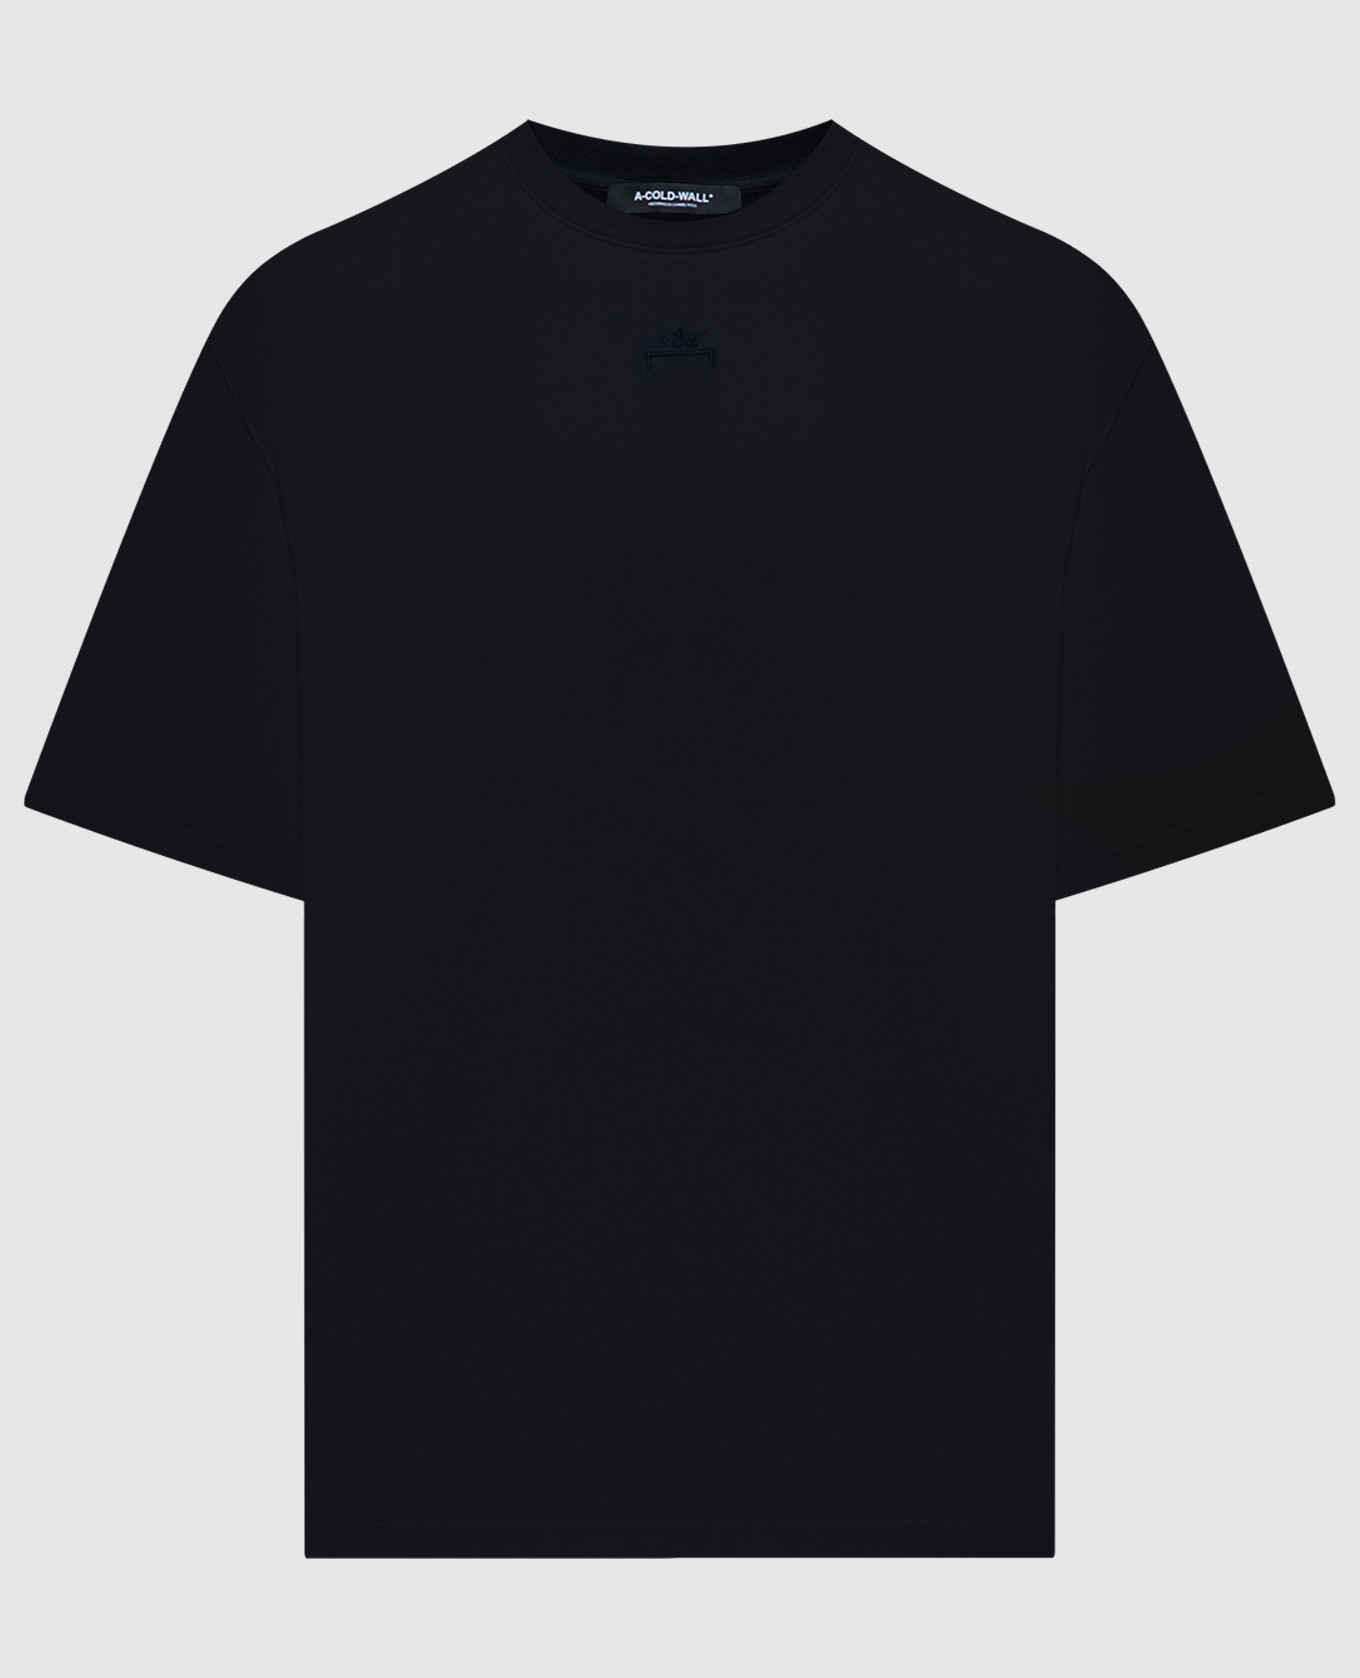 Черная футболка с вышивкой логотипа